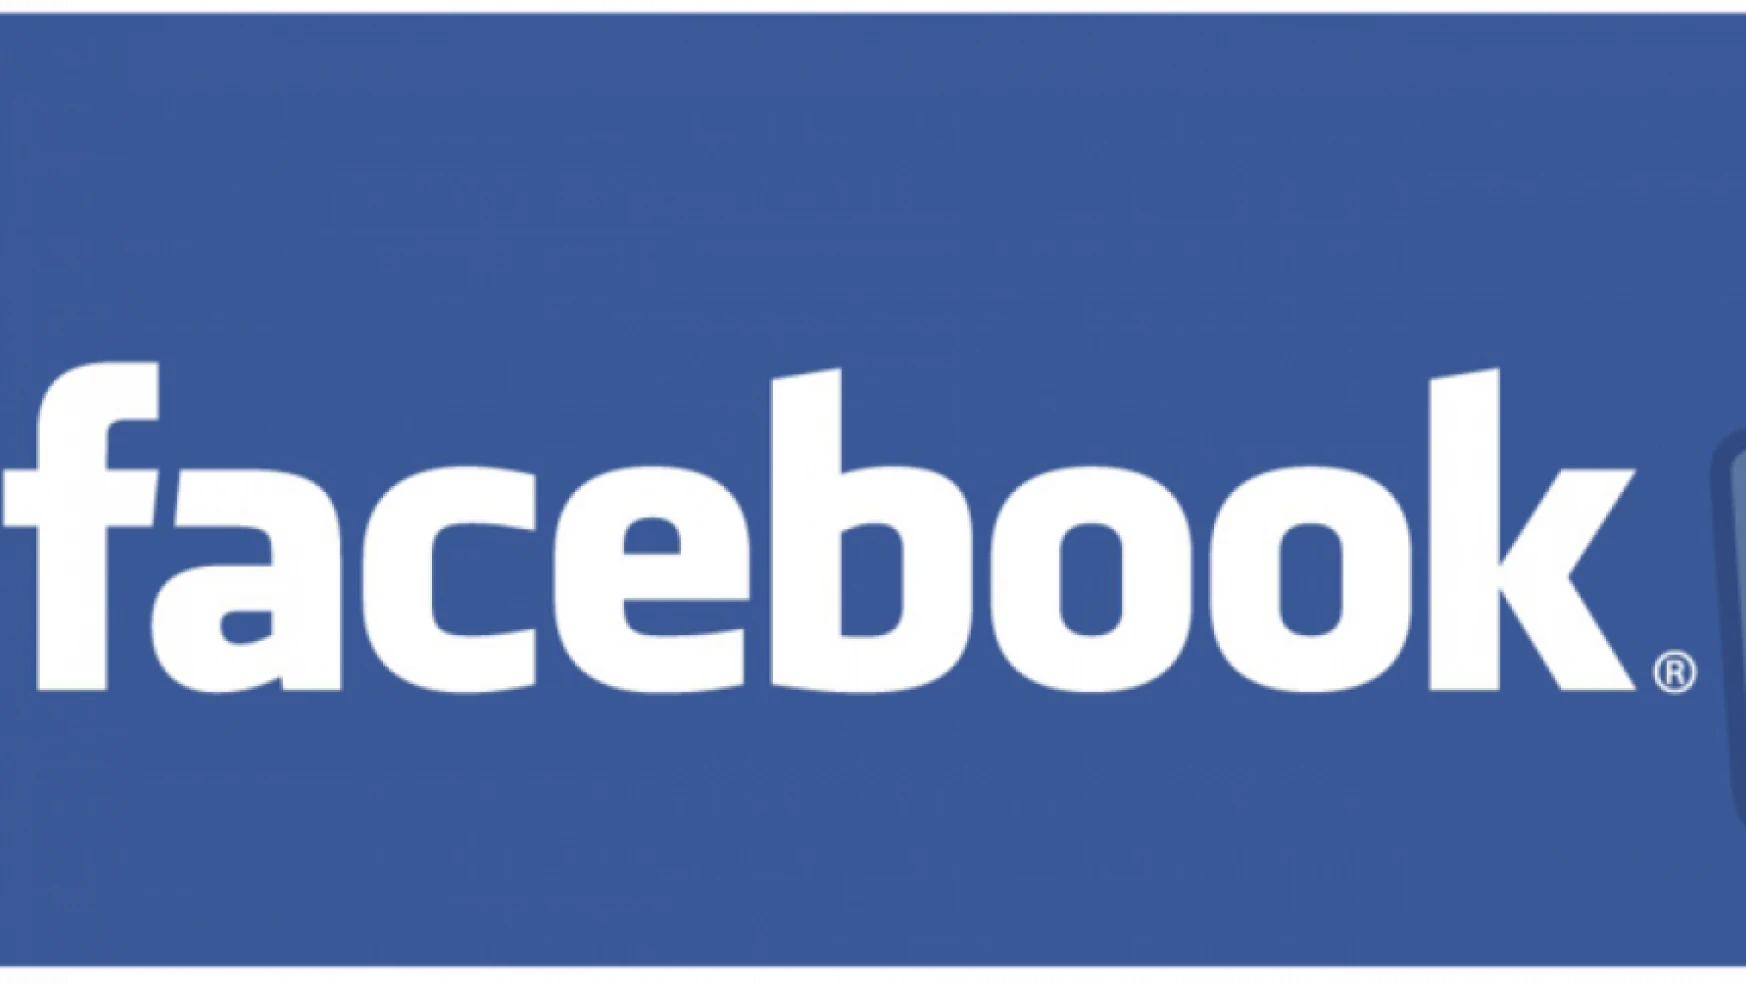 Facebook merkezi bomba tehdidi nedeniyle tahliye edildi